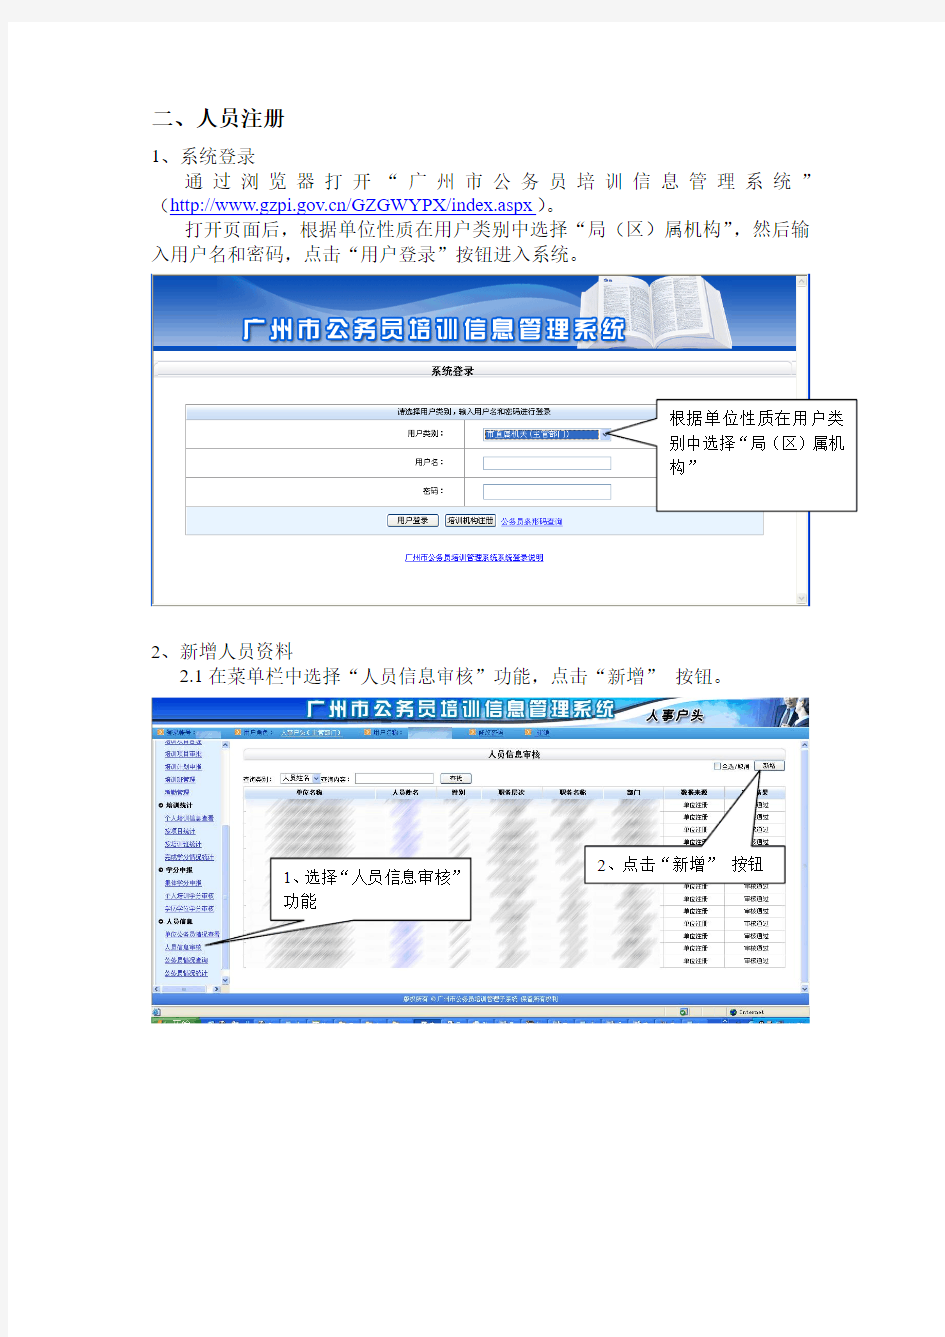 关于广州市公务员培训信息管理系统